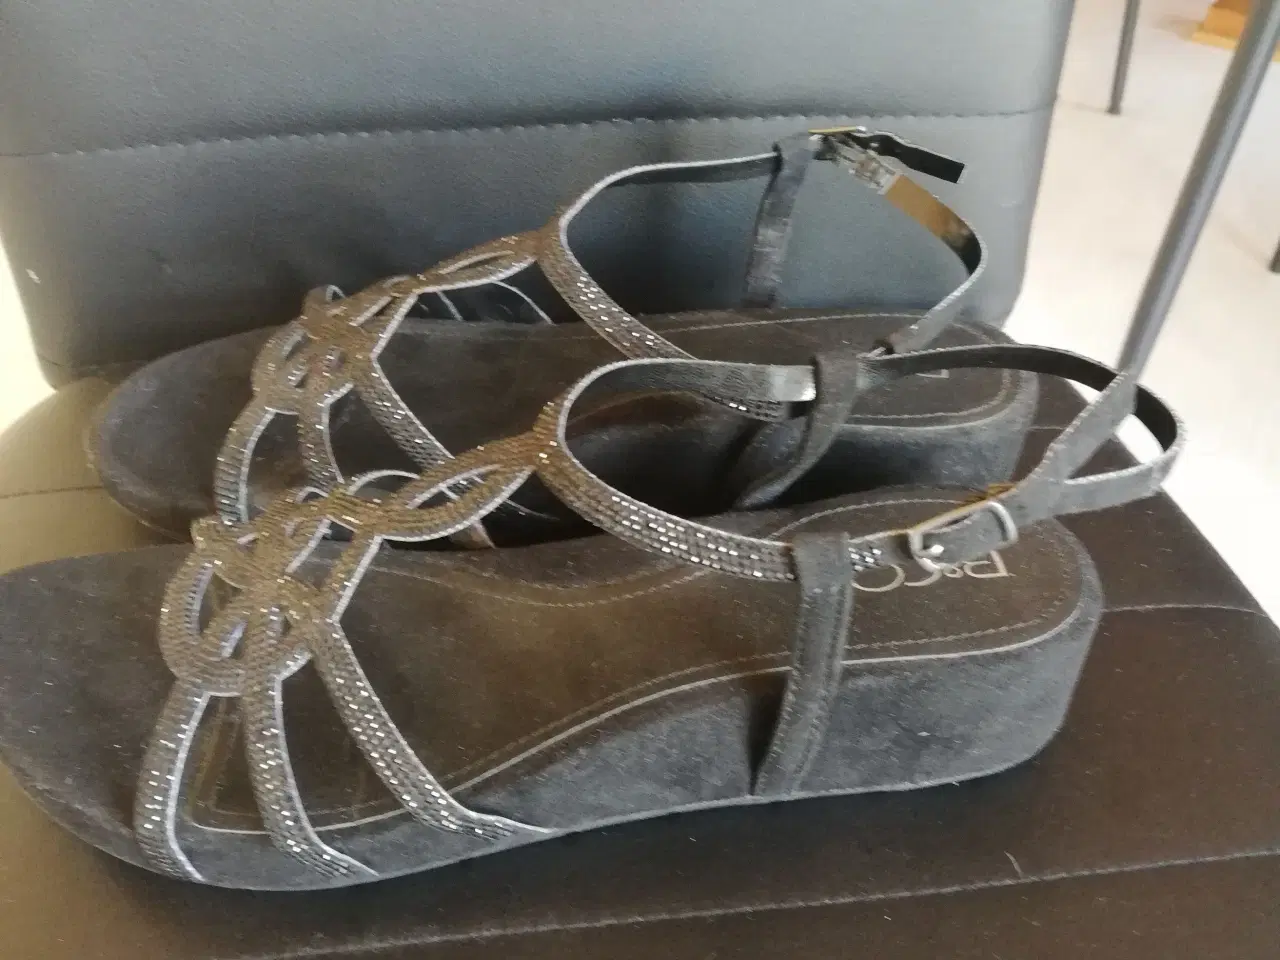 Billede 2 - sandaler